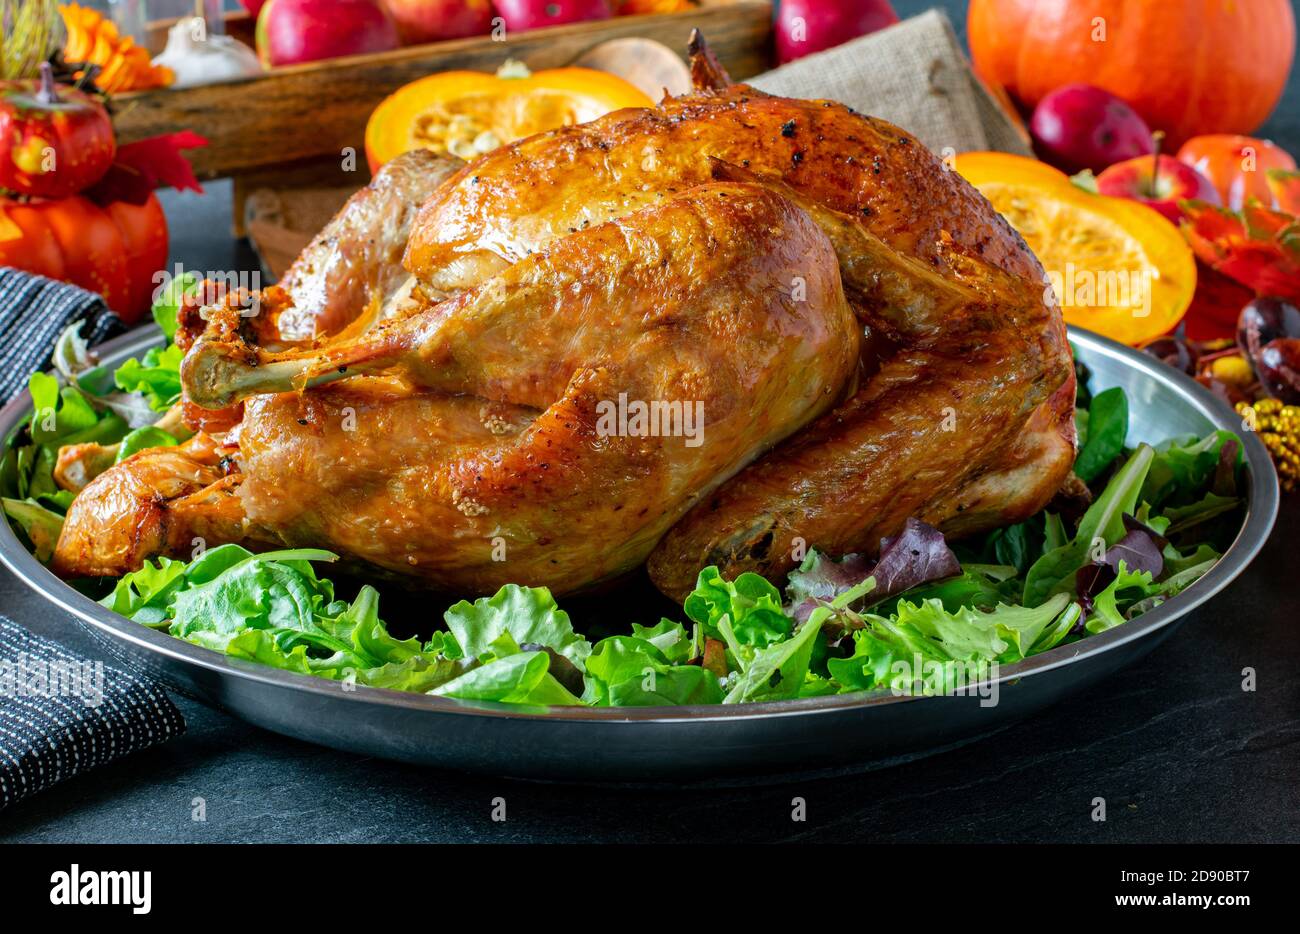 https://c8.alamy.com/comp/2D90BT7/oven-baked-roast-turkey-isolated-on-a-table-2D90BT7.jpg